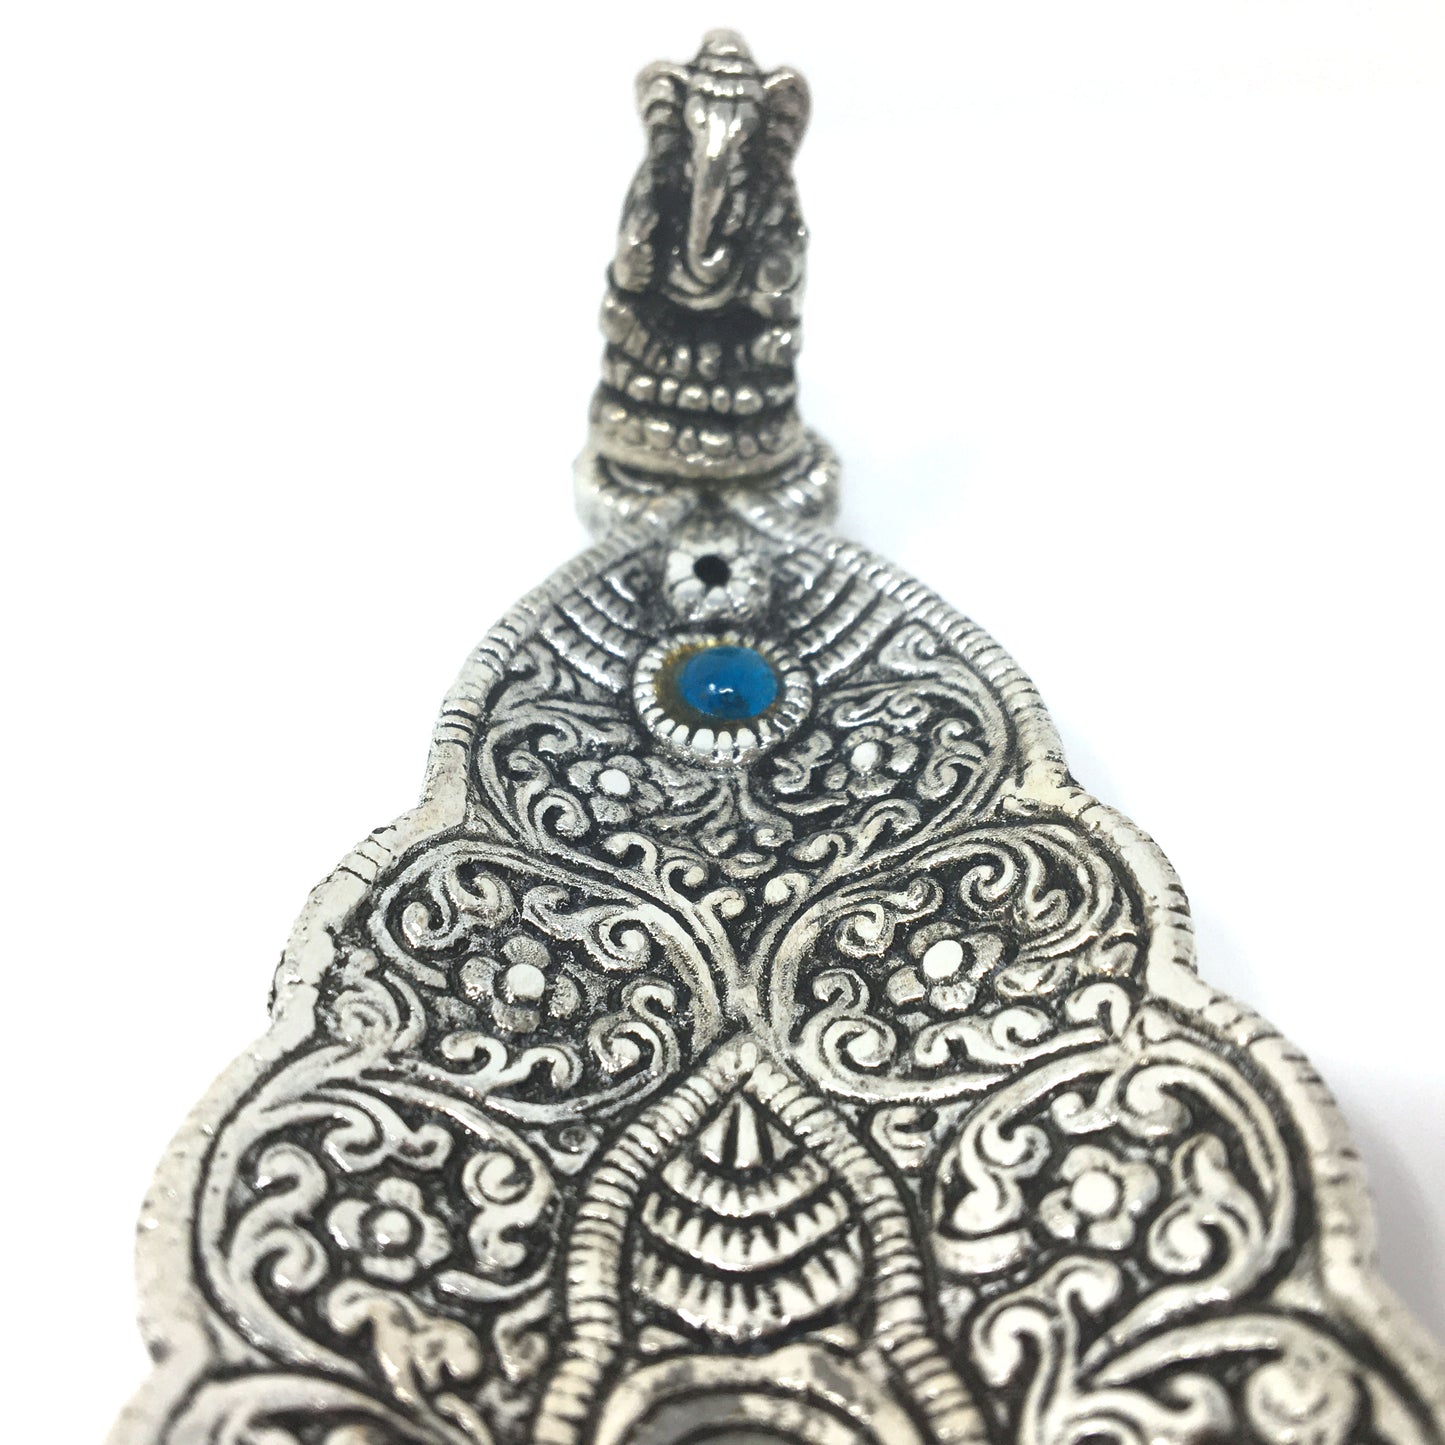 India Incense Burner - Ornate Metal Ganesh Large Leaf Blue Decorative Stone